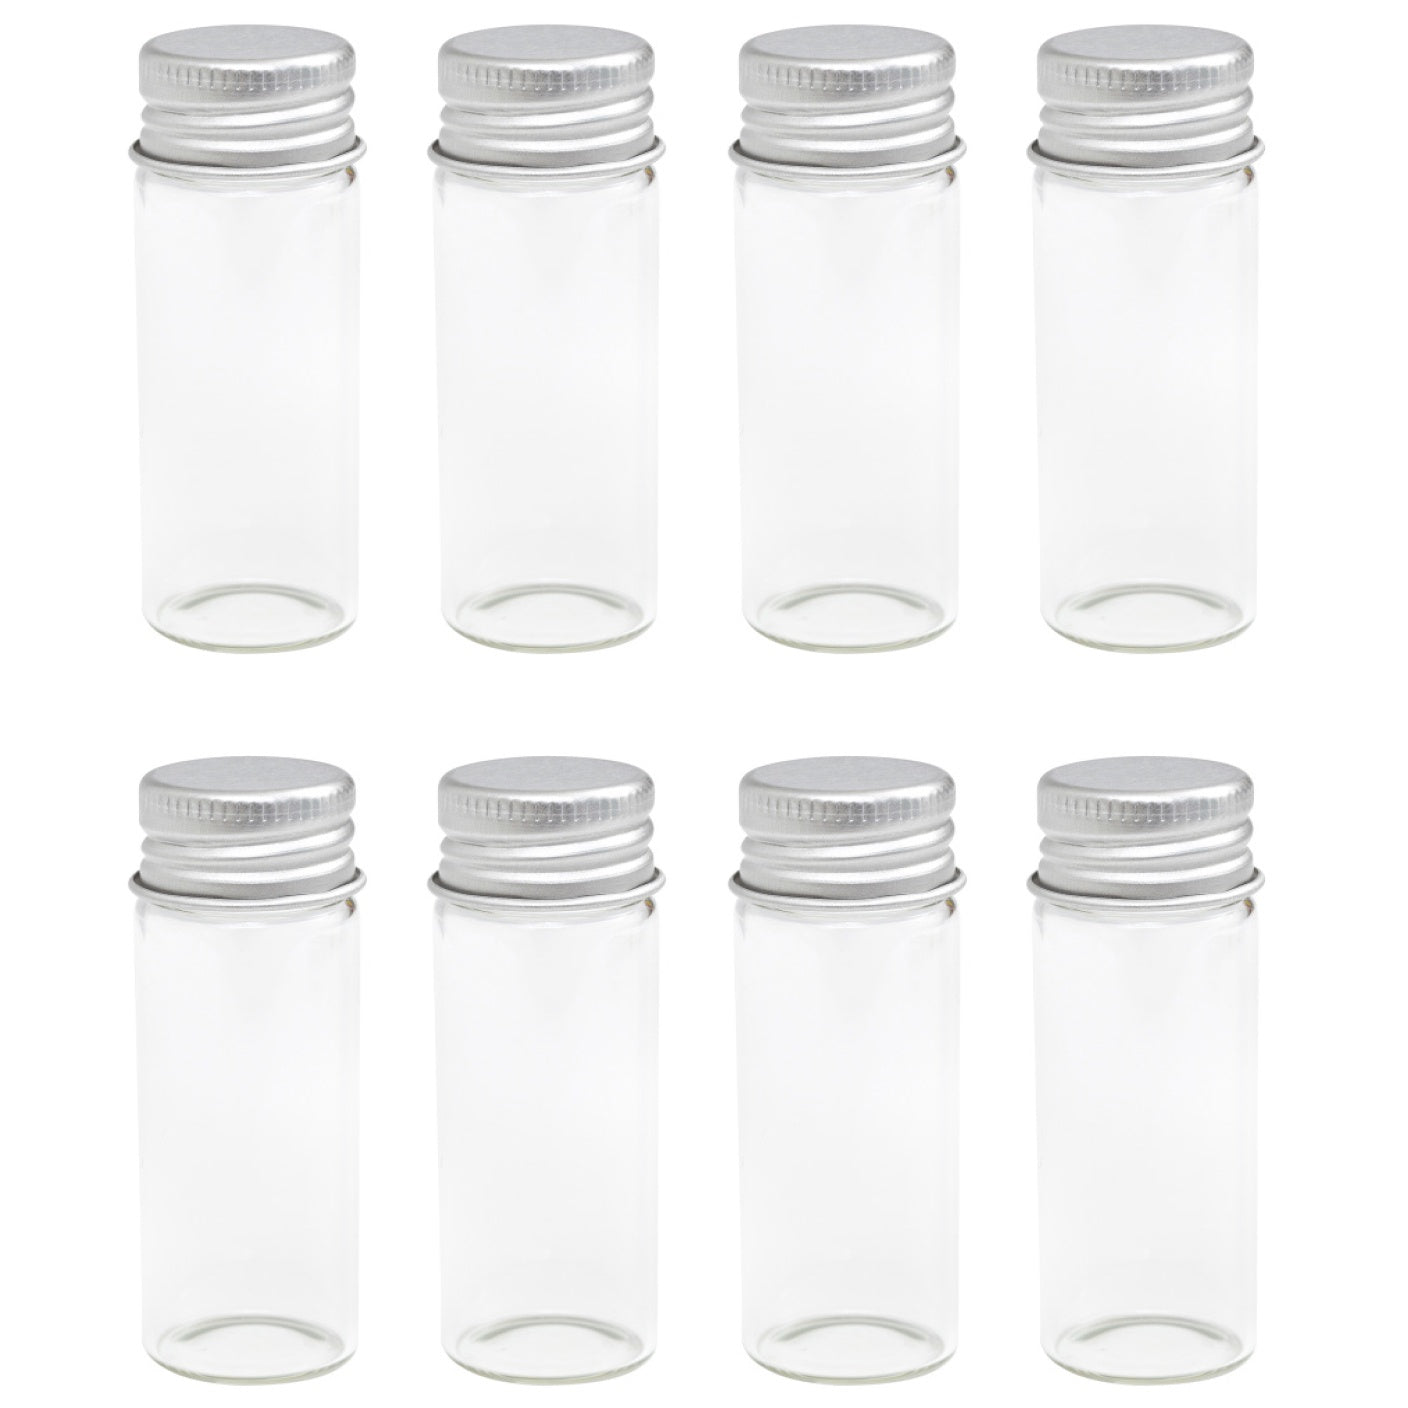 We R Memory Keepers Storage Glass Jars 8/Pkg-Large